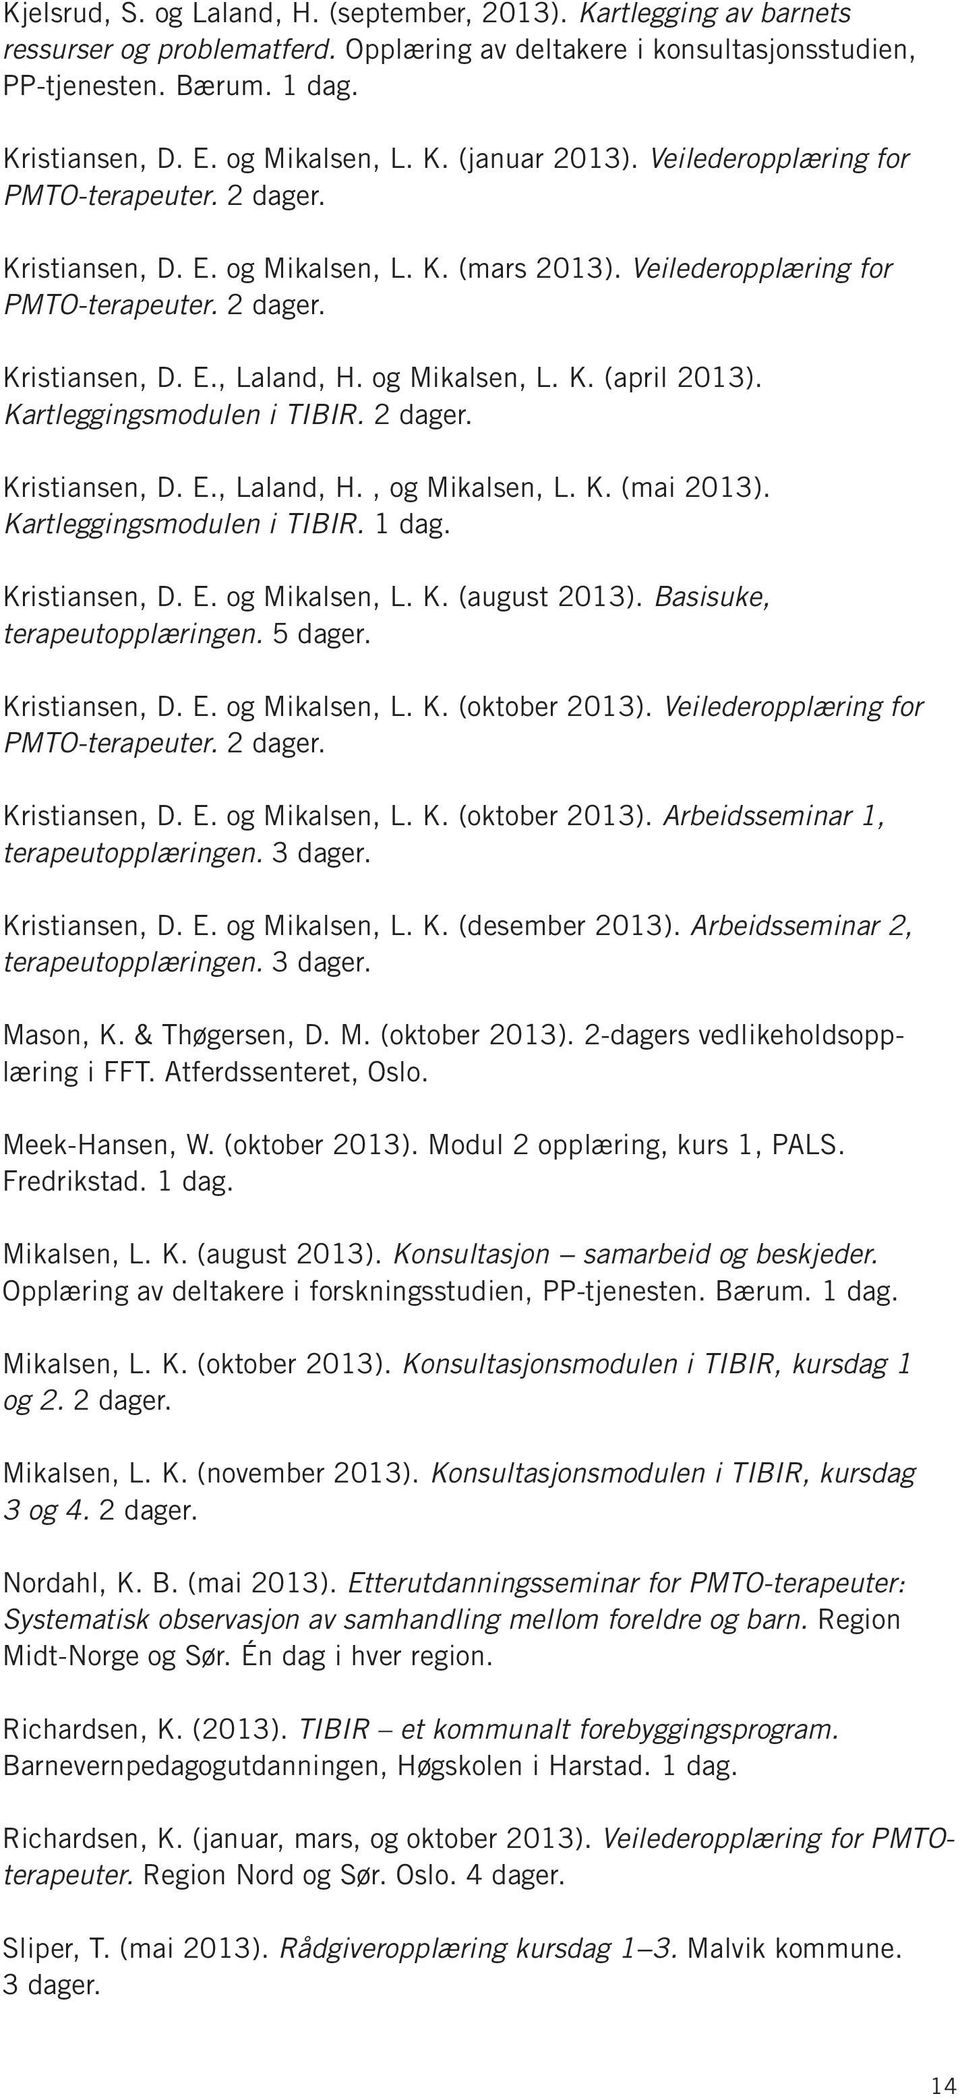 og Mikalsen, L. K. (april 2013). Kartleggingsmodulen i TIBIR. 2 dager. Kristiansen, D. E., Laland, H., og Mikalsen, L. K. (mai 2013). Kartleggingsmodulen i TIBIR. 1 dag. Kristiansen, D. E. og Mikalsen, L. K. (august 2013).